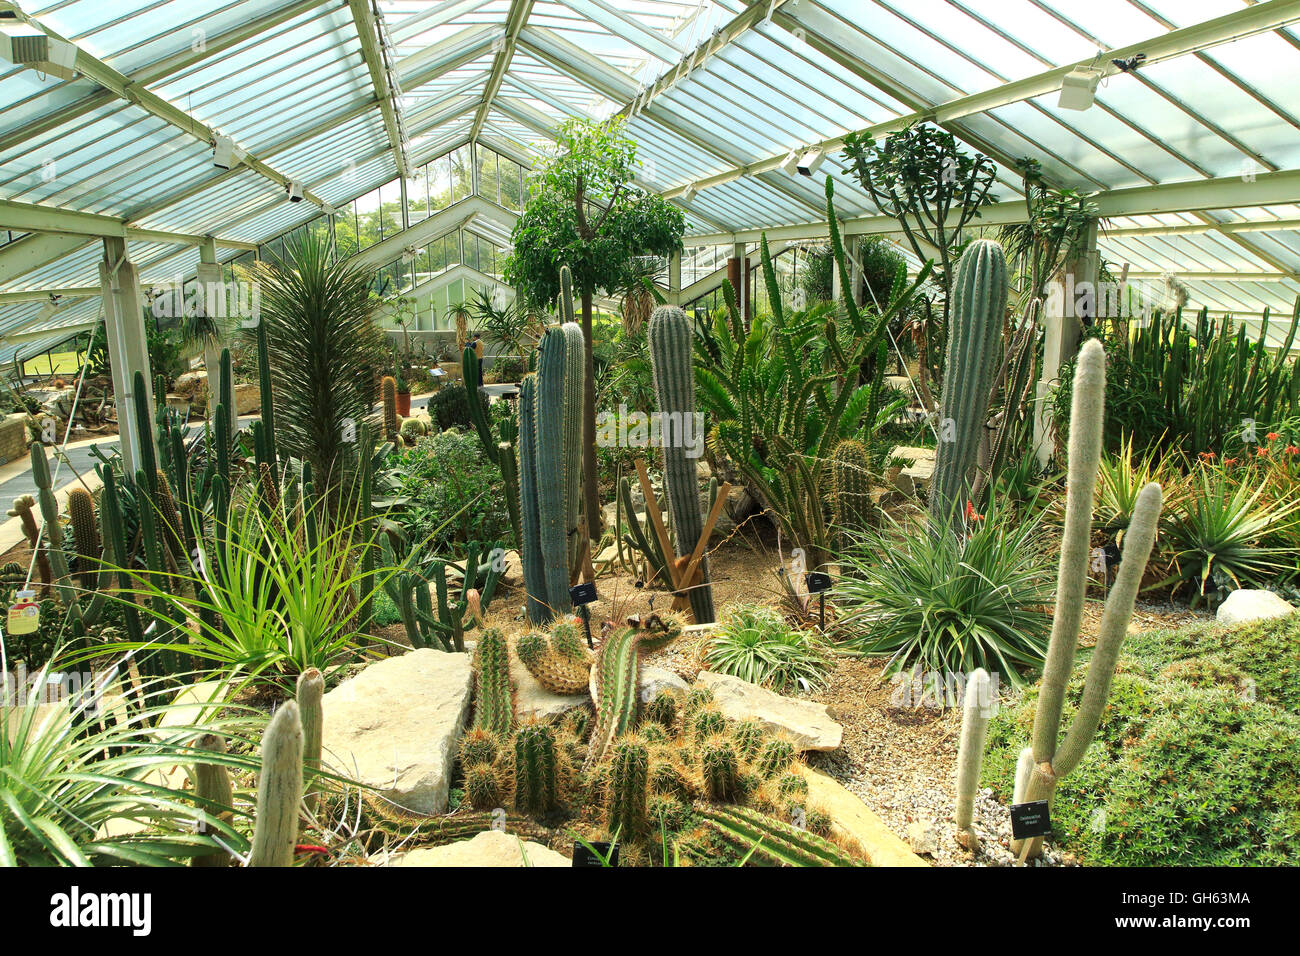 Plantes du désert à l'intérieur de l'hôtel Princess of Wales conservatory Royal Botanic Gardens, Kew, Londres, Angleterre, Royaume-Uni Banque D'Images